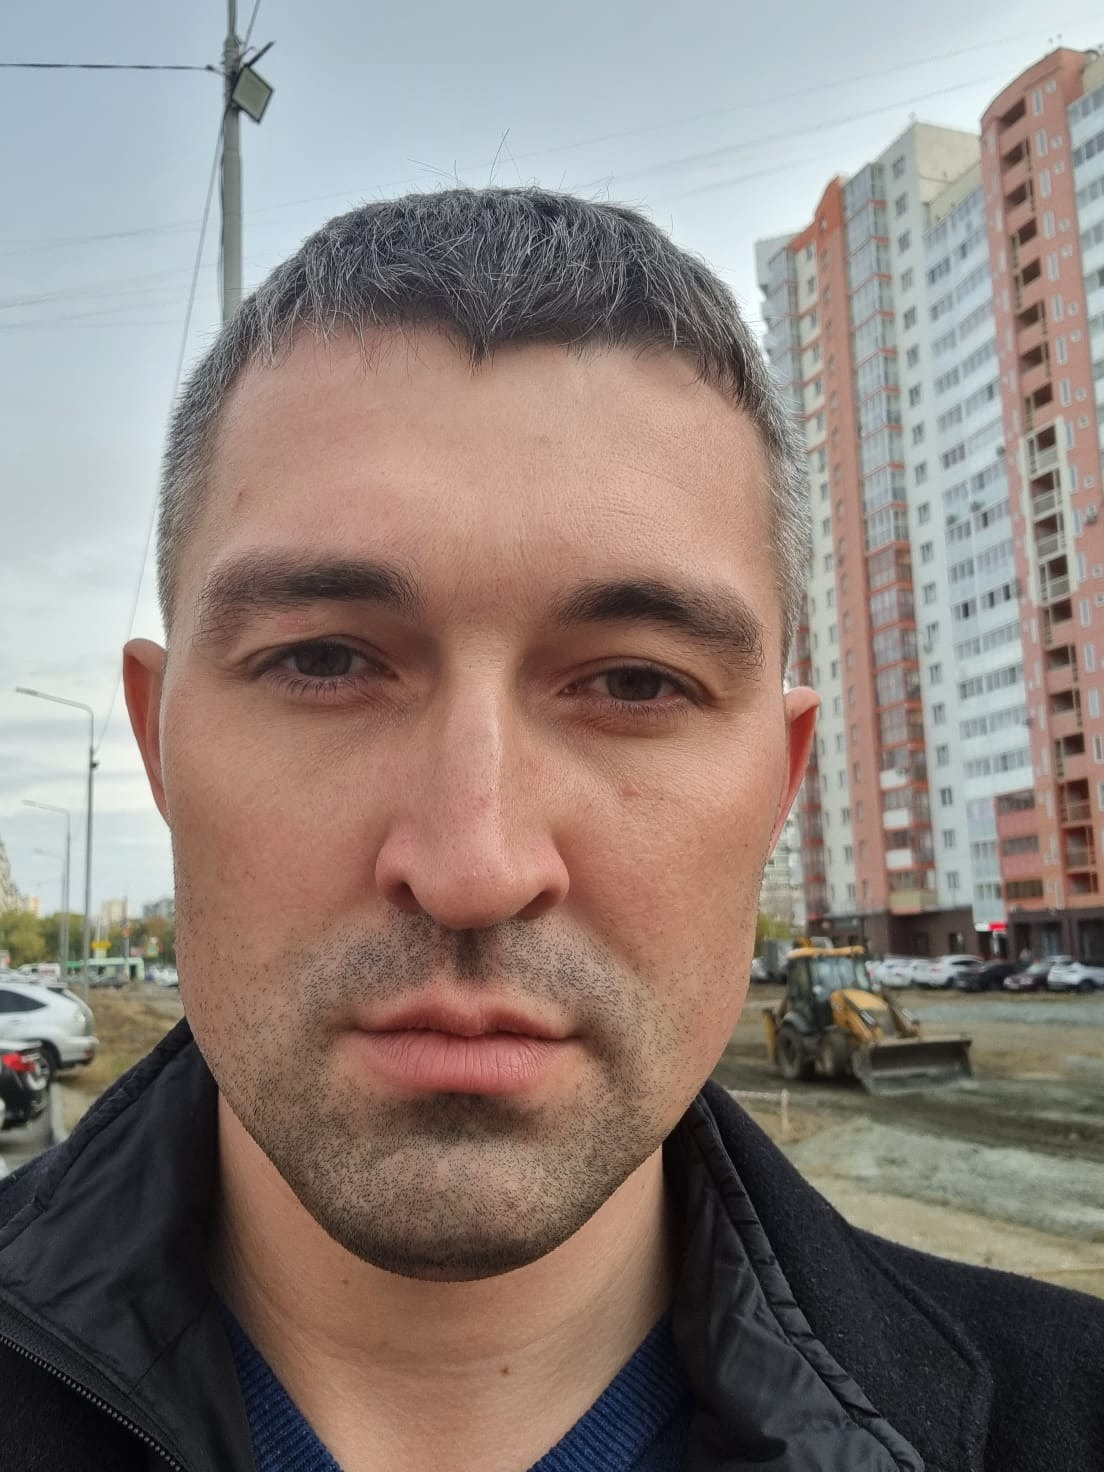 Руководитель компании «Домоуправ» Артем Клименко рассказал, как просил подчиненных сделать прививку